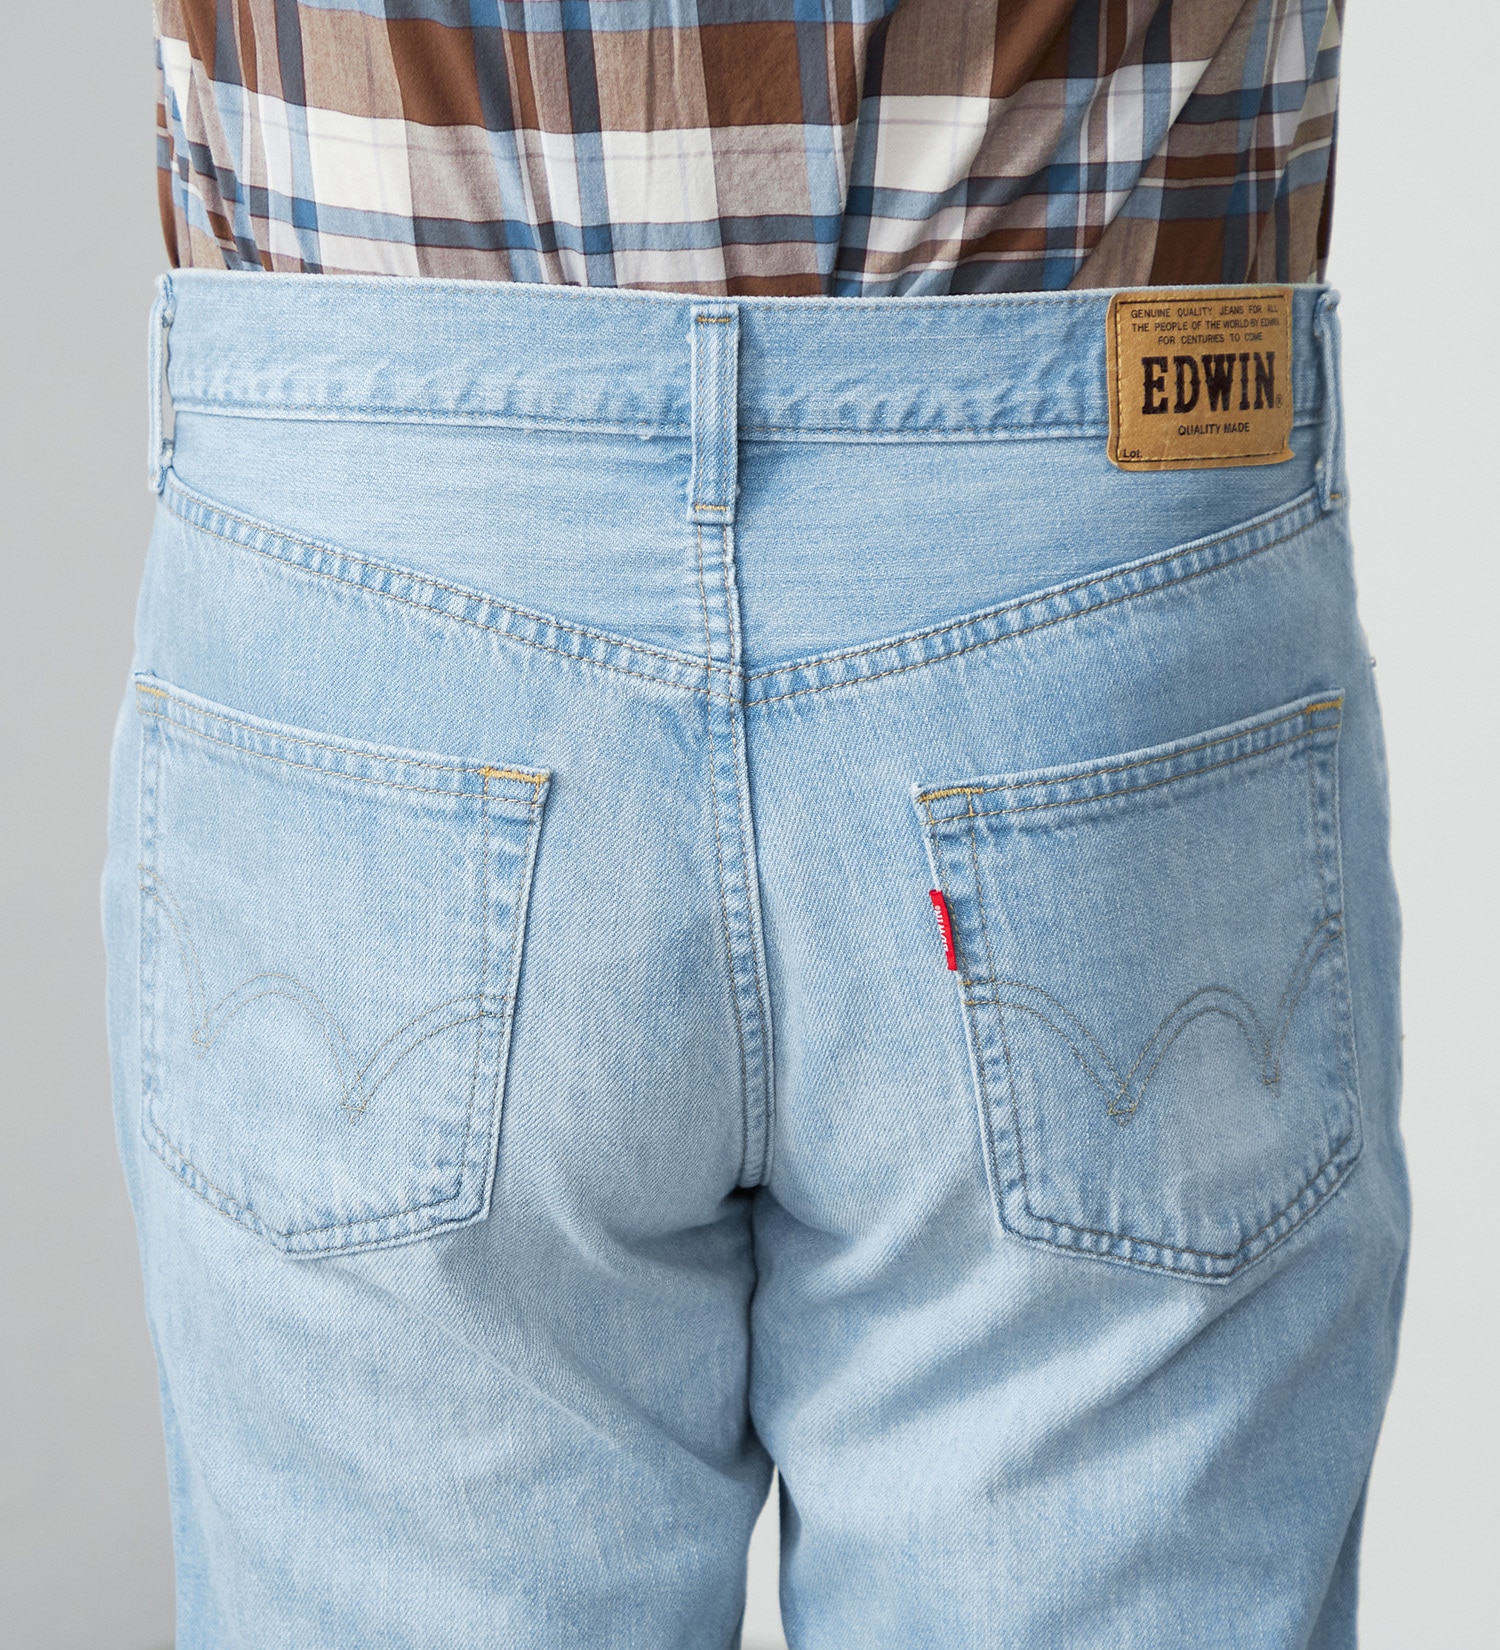 EDWIN(エドウイン)の【大きいサイズ】EDWIN BASIC クロップドデニムパンツ|パンツ/ショート丈/メンズ|淡色ブルー